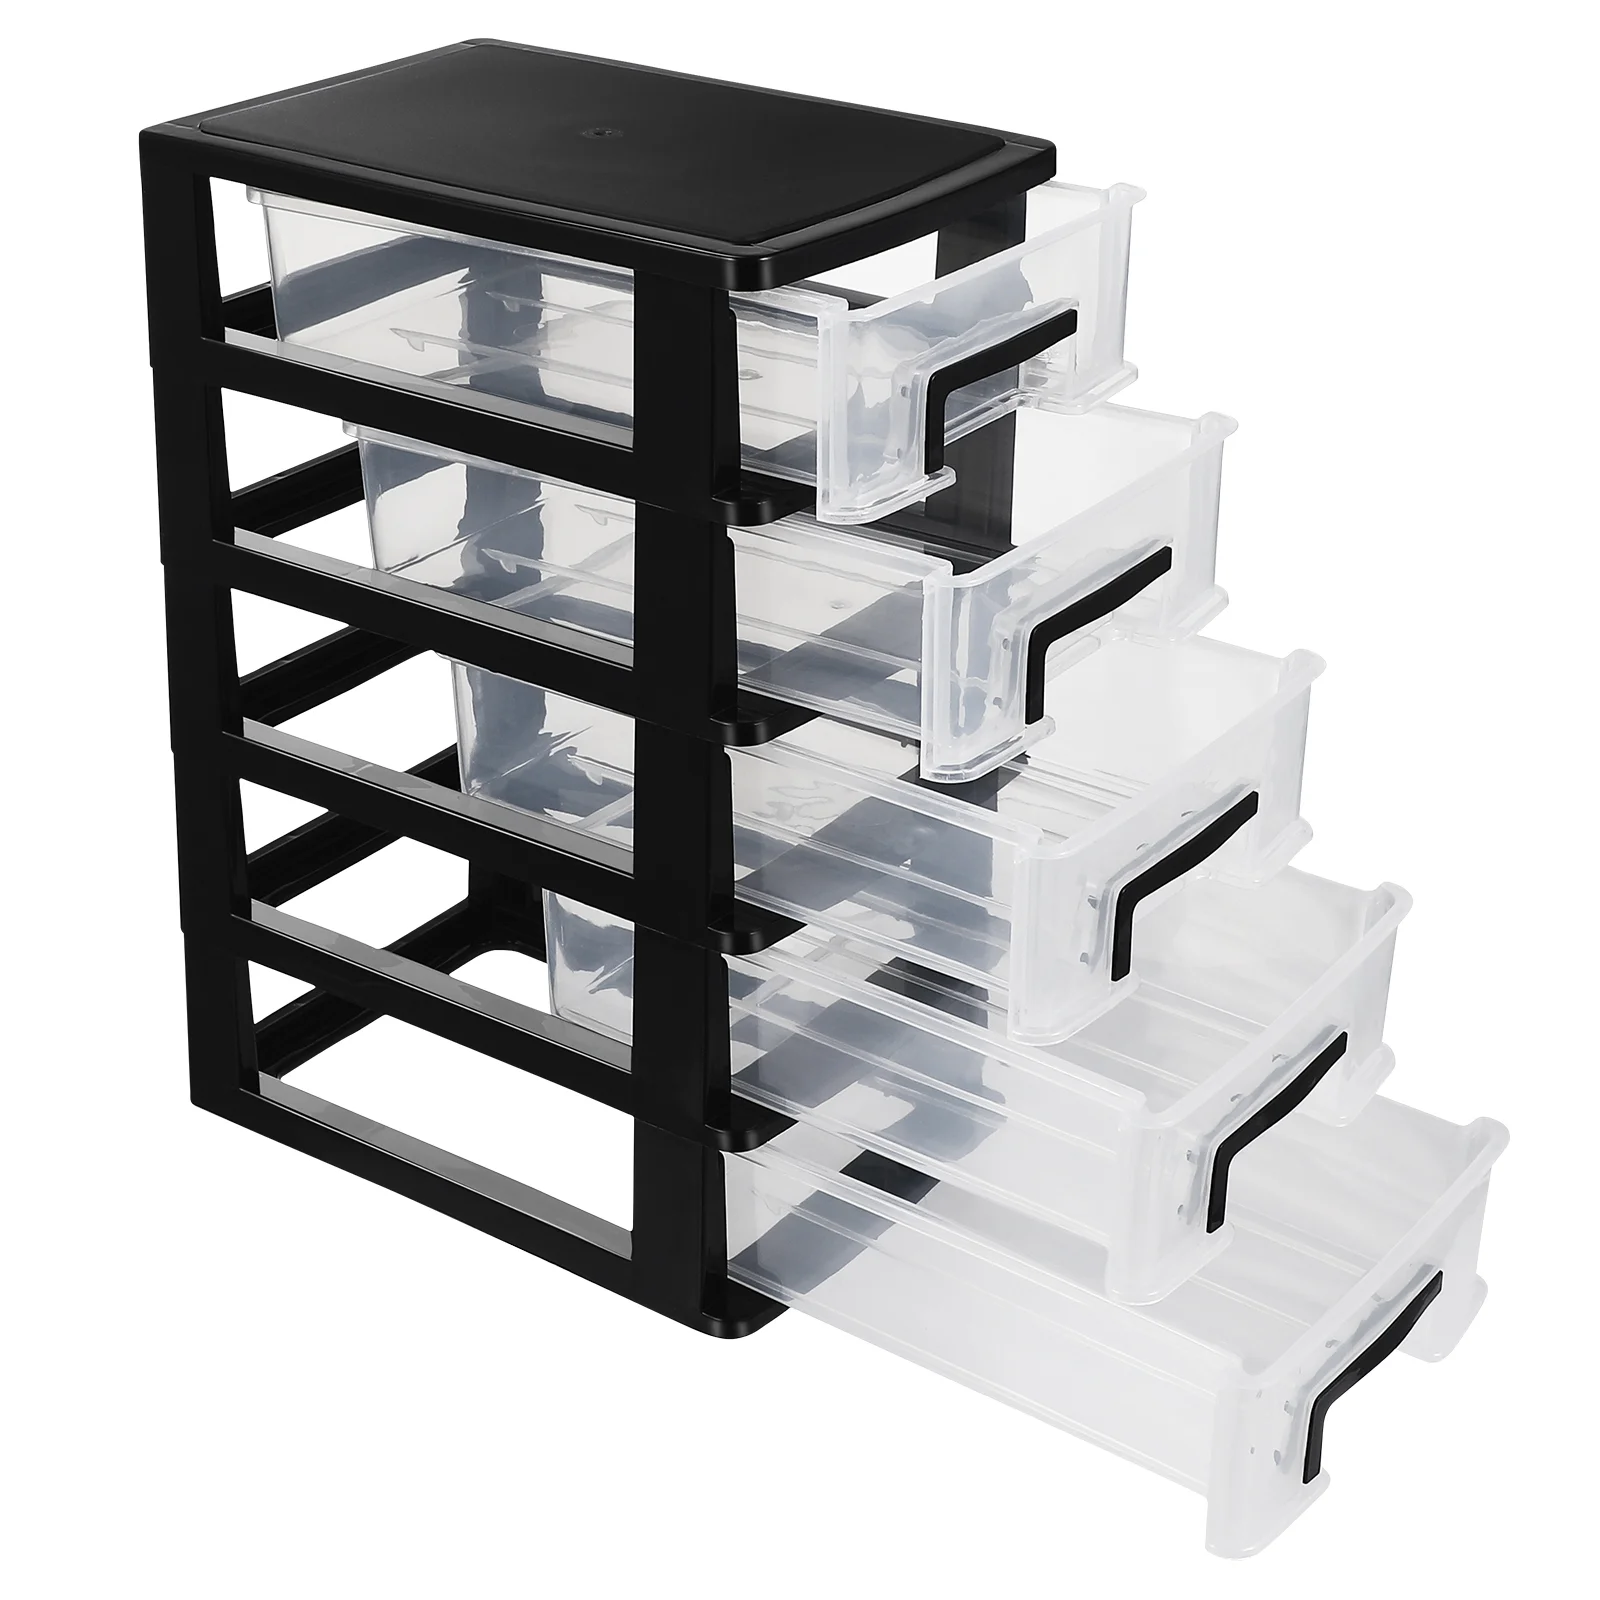 

Ящик-органайзер для хранения, 5 уровней, ящиков для шкафа, ящики для хранения для офиса, дома, стола